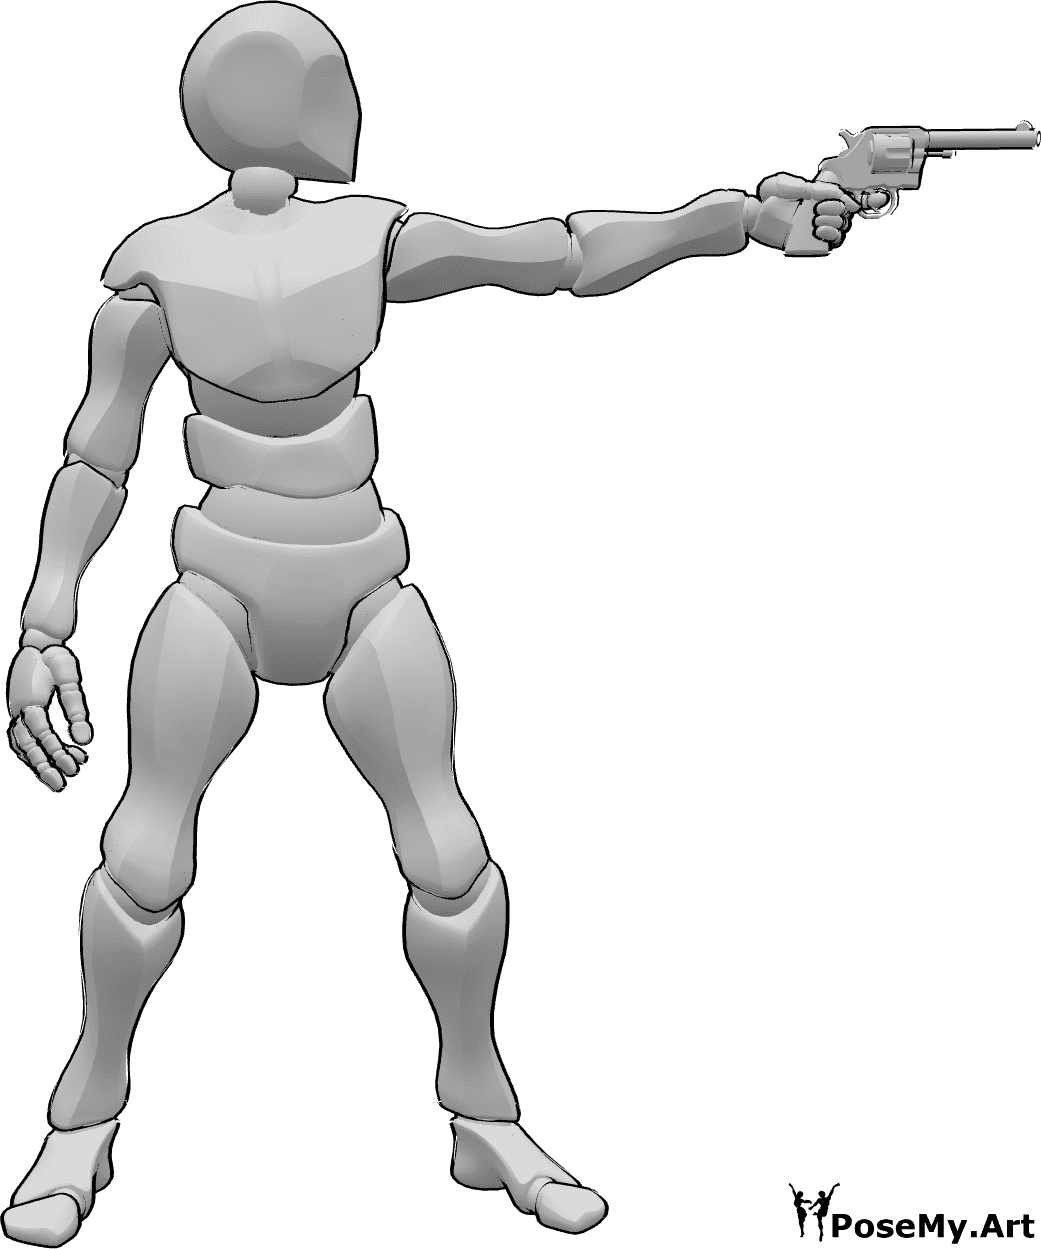 Referência de poses- Pose de alvo de pontaria masculina - O homem está a apontar a sua arma para a pose do alvo